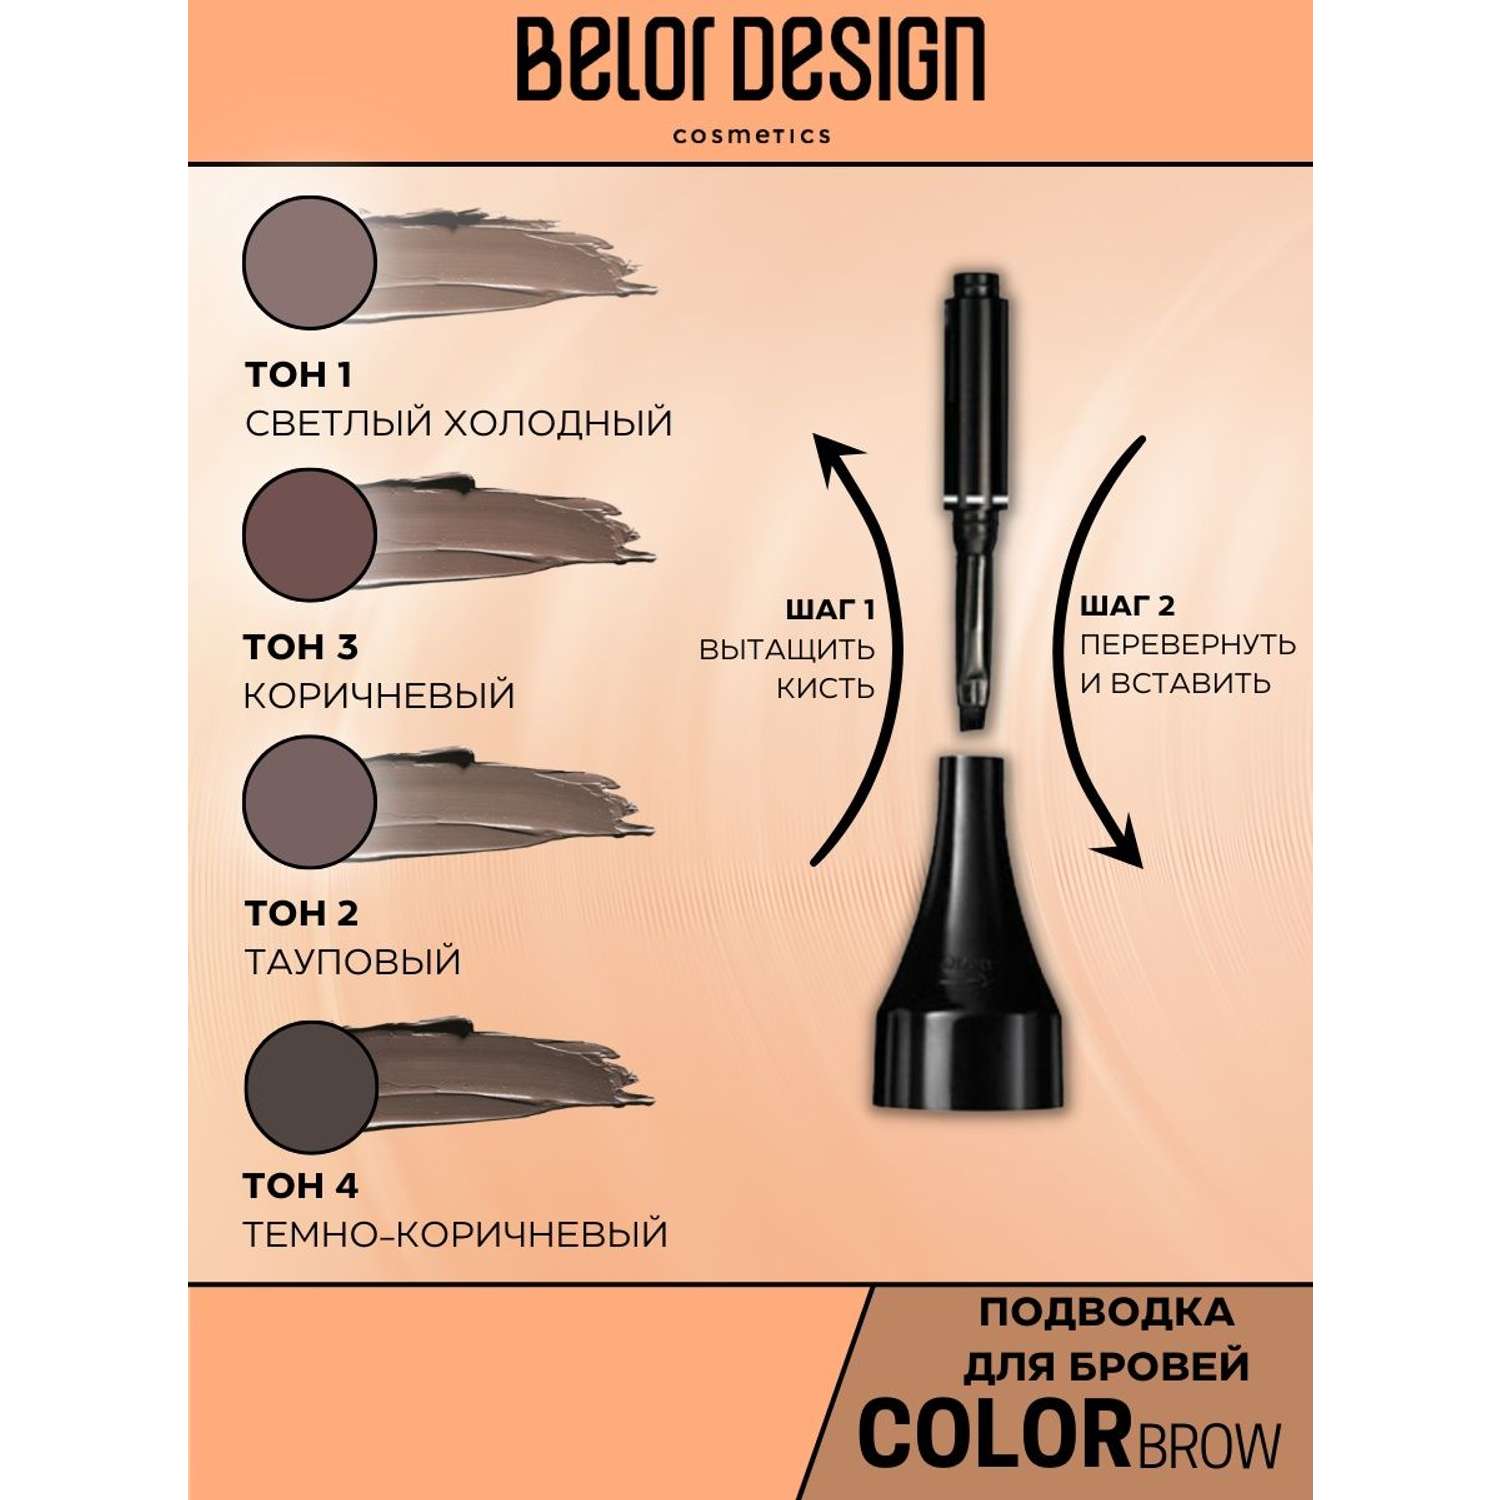 Подводка для бровей Belor Design color brow тон 3 - фото 5